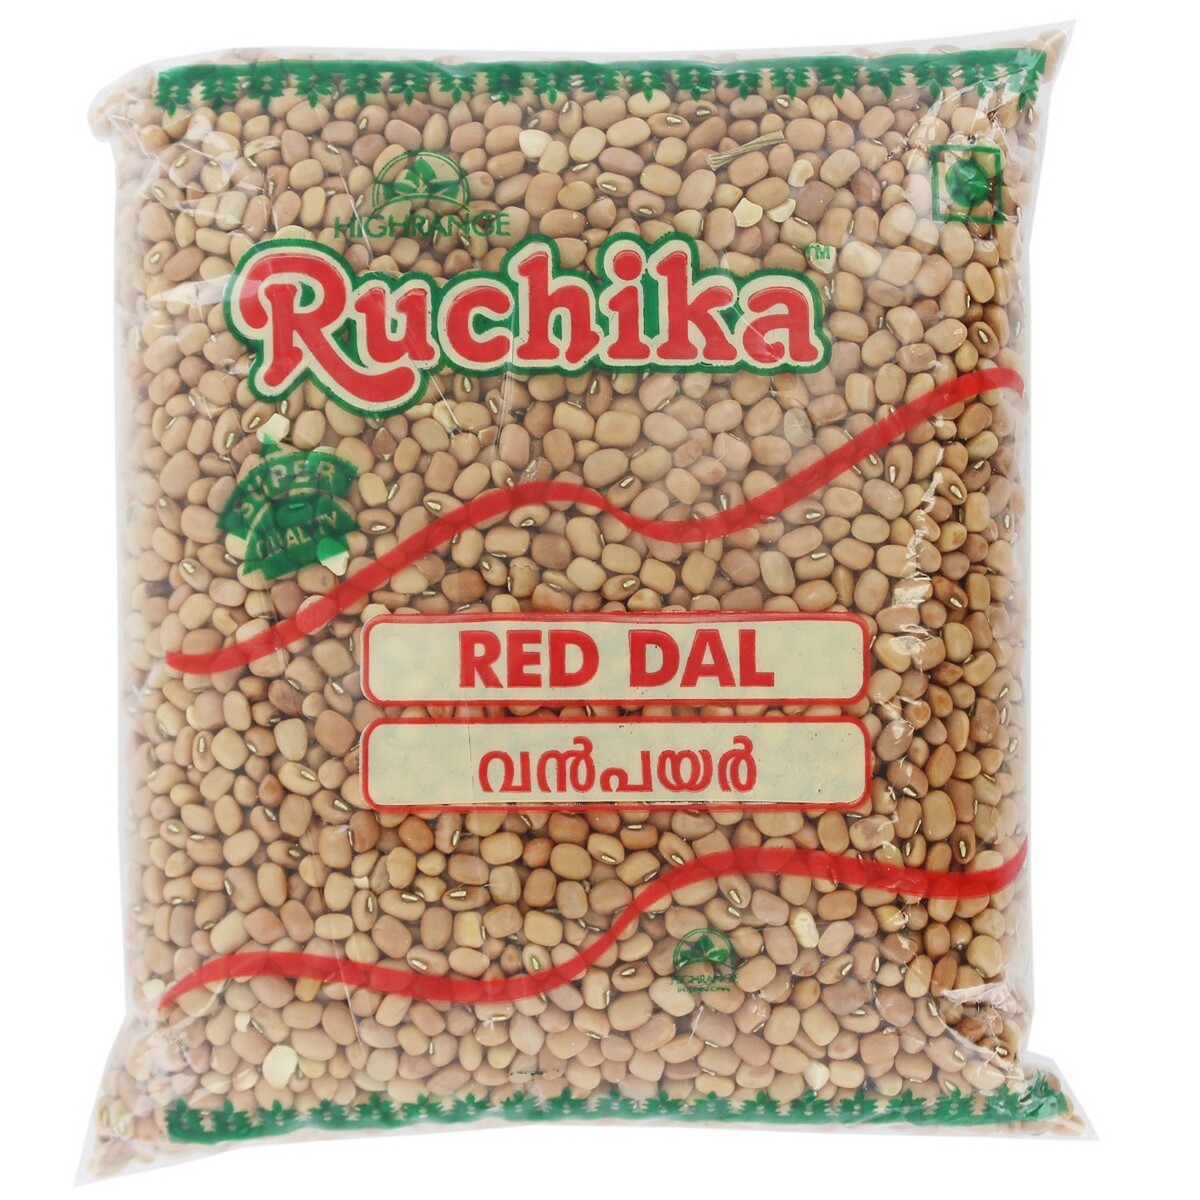 Ruchika Big Payar (Red Dal) 1kg